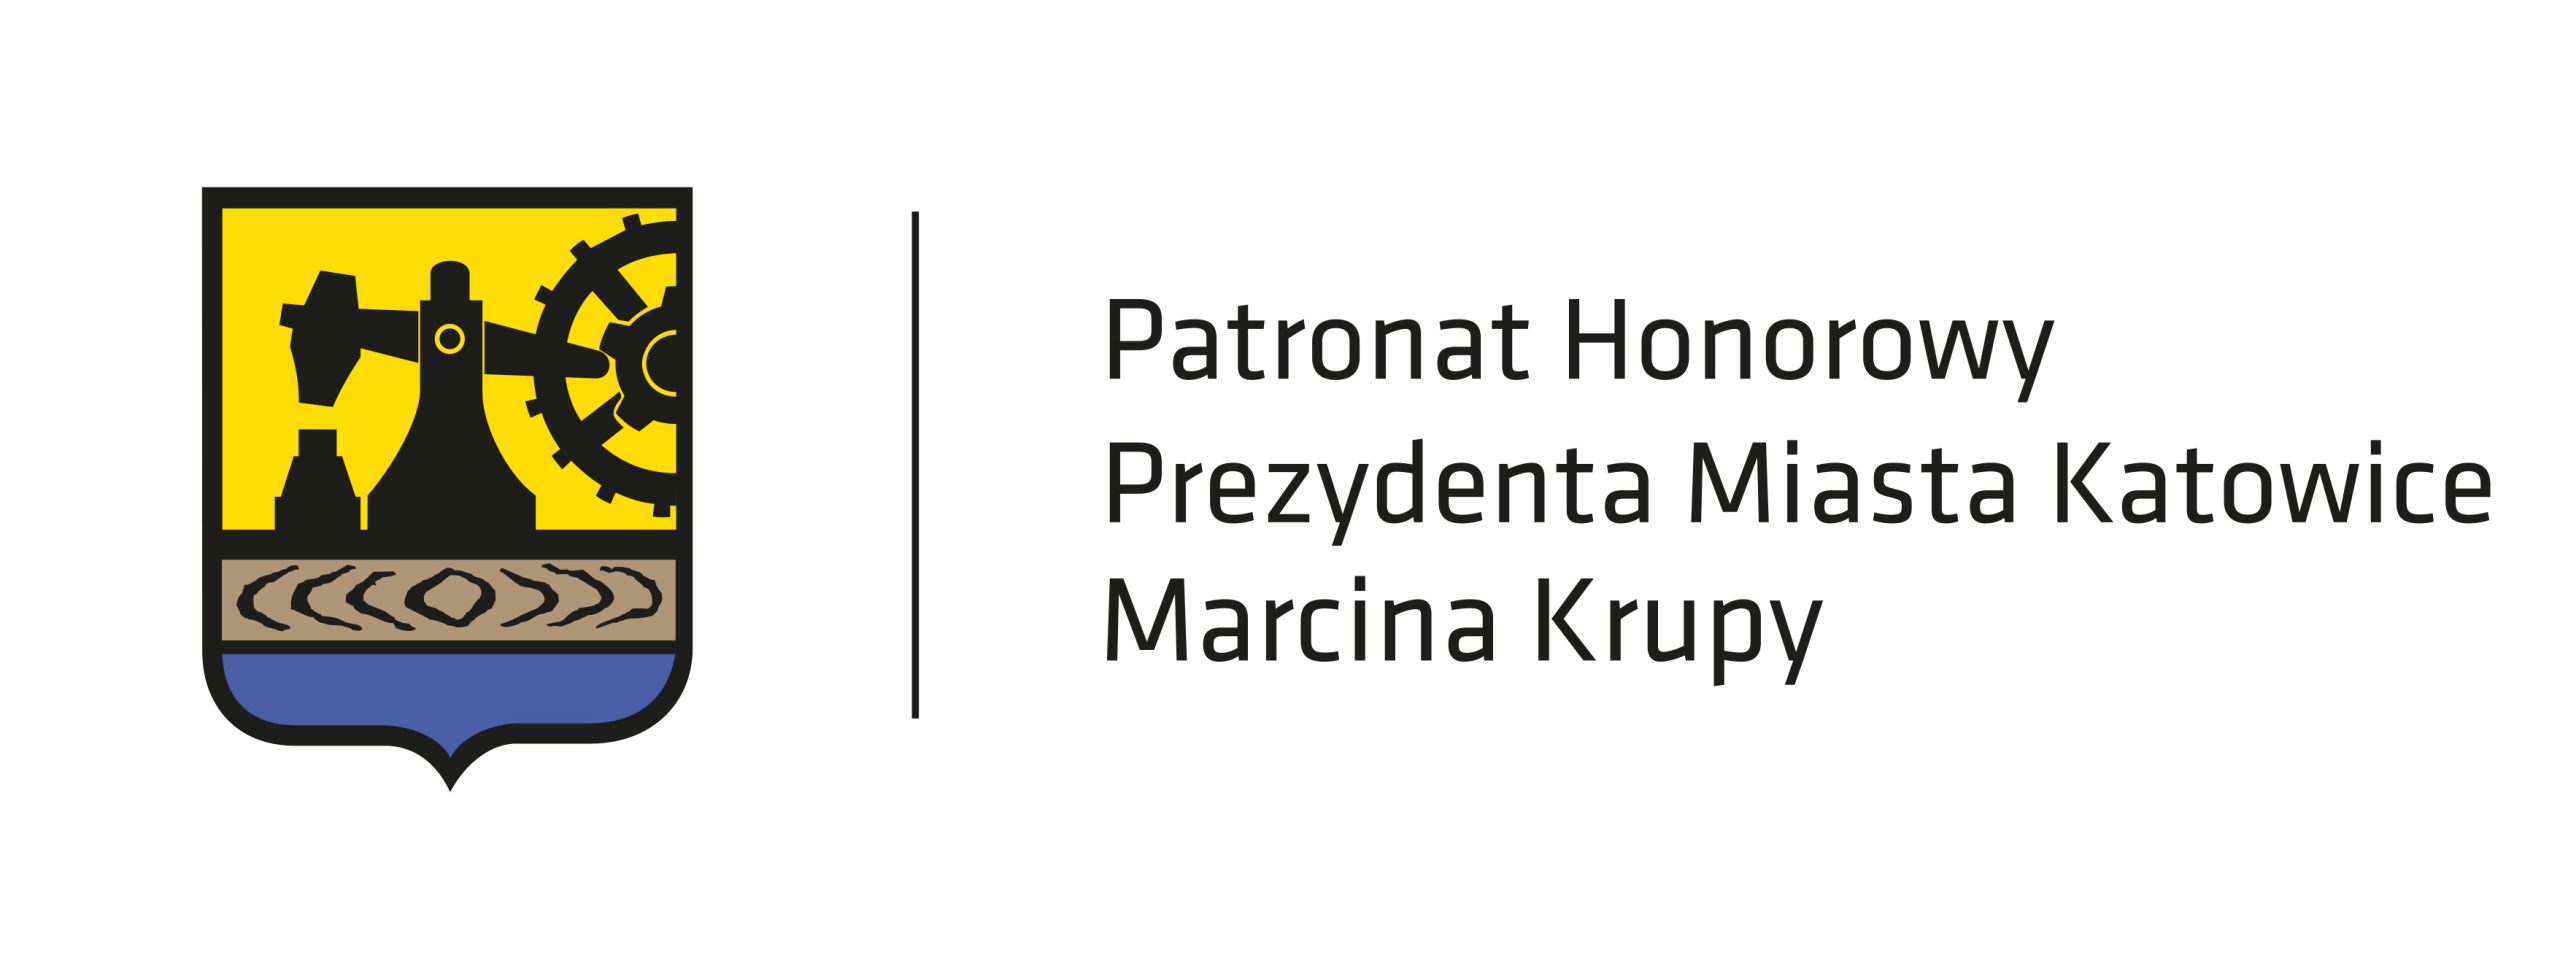 Patronat Honorowy Prezydenta Miasta Katowice